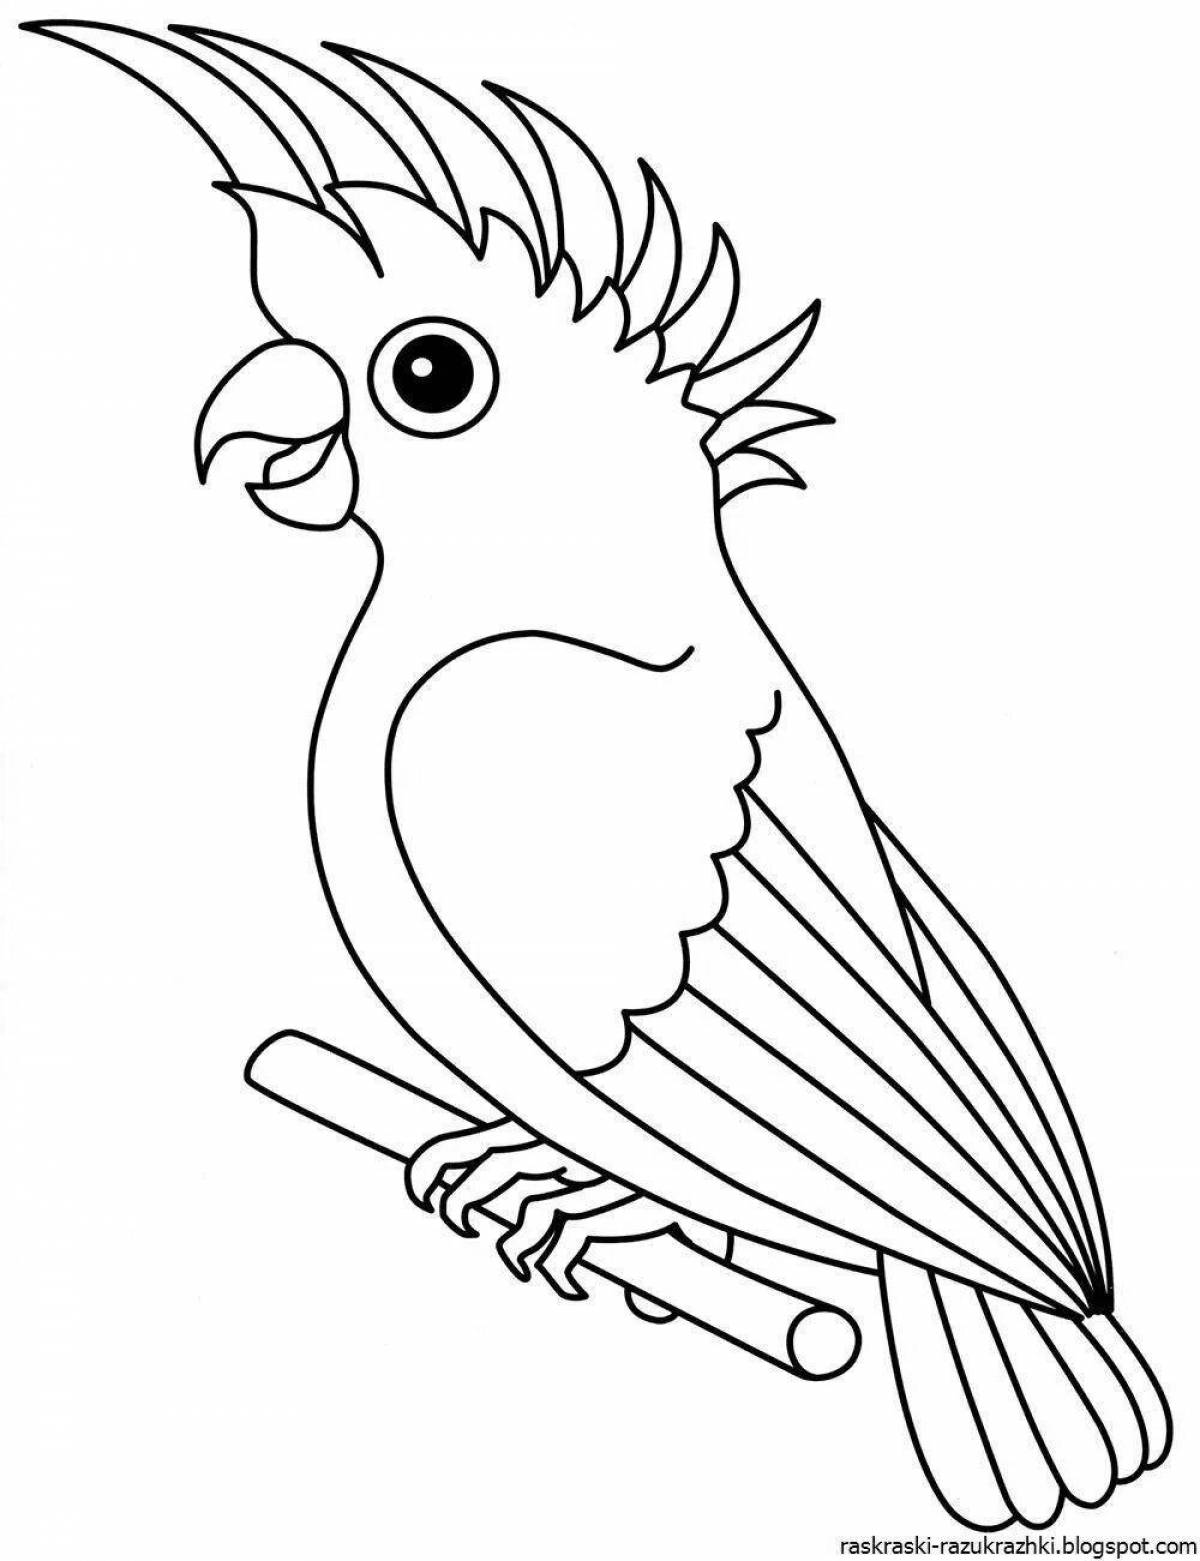 Яркая раскраска попугай для детей 3-4 лет